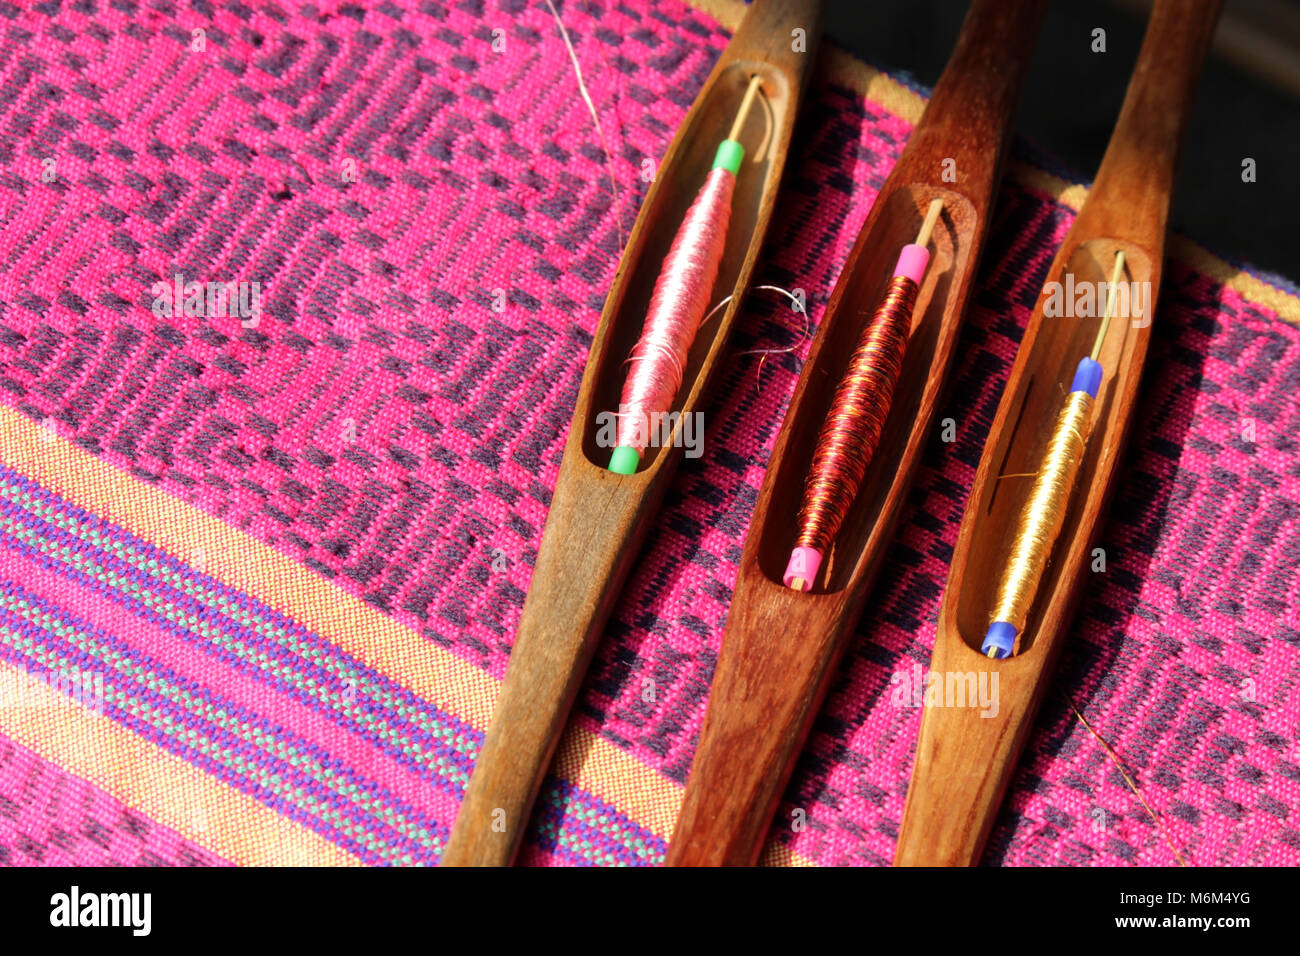 Fil de canette en bois coloré dans le tissu de soie, le tissage traditionnel de la soie thaïlandaise Banque D'Images